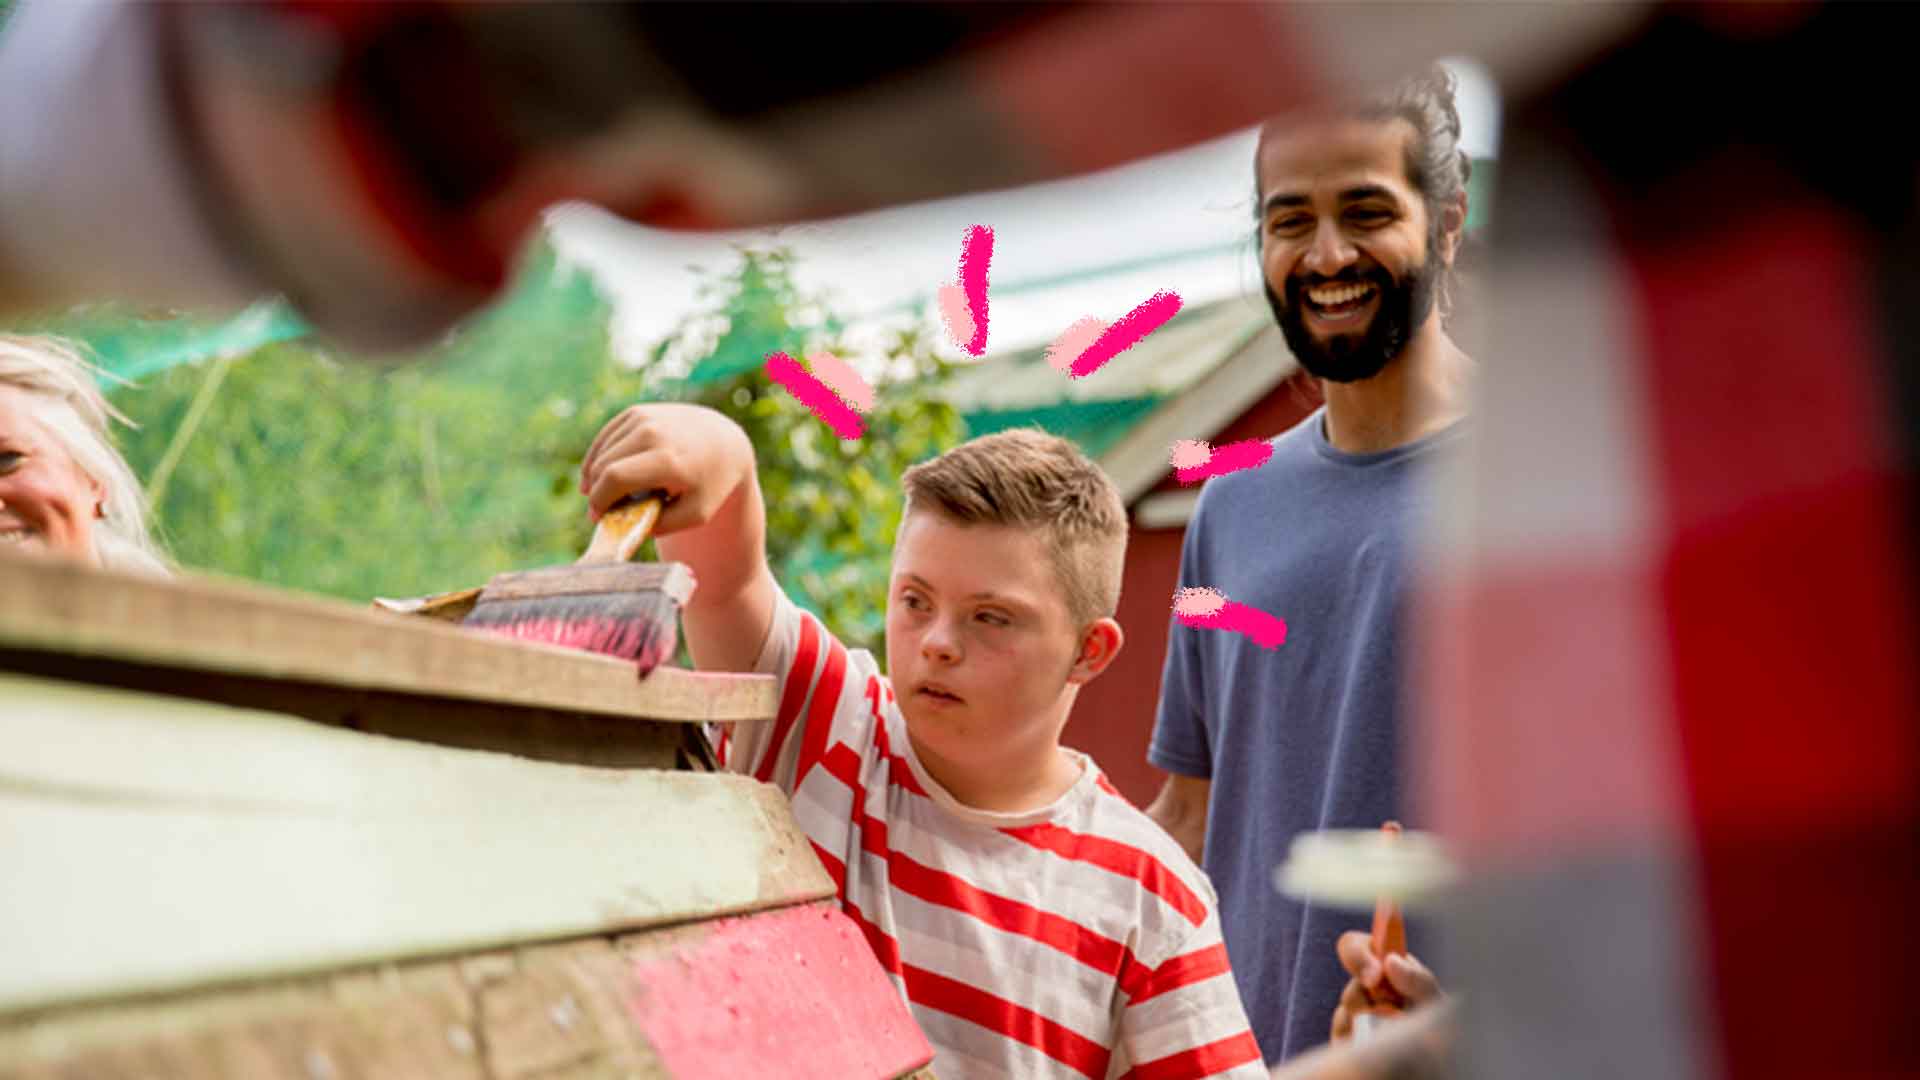 Imagem de um menino com pincel pintando uma parede, atrás dele há um homem que olha para o menino e sorri.